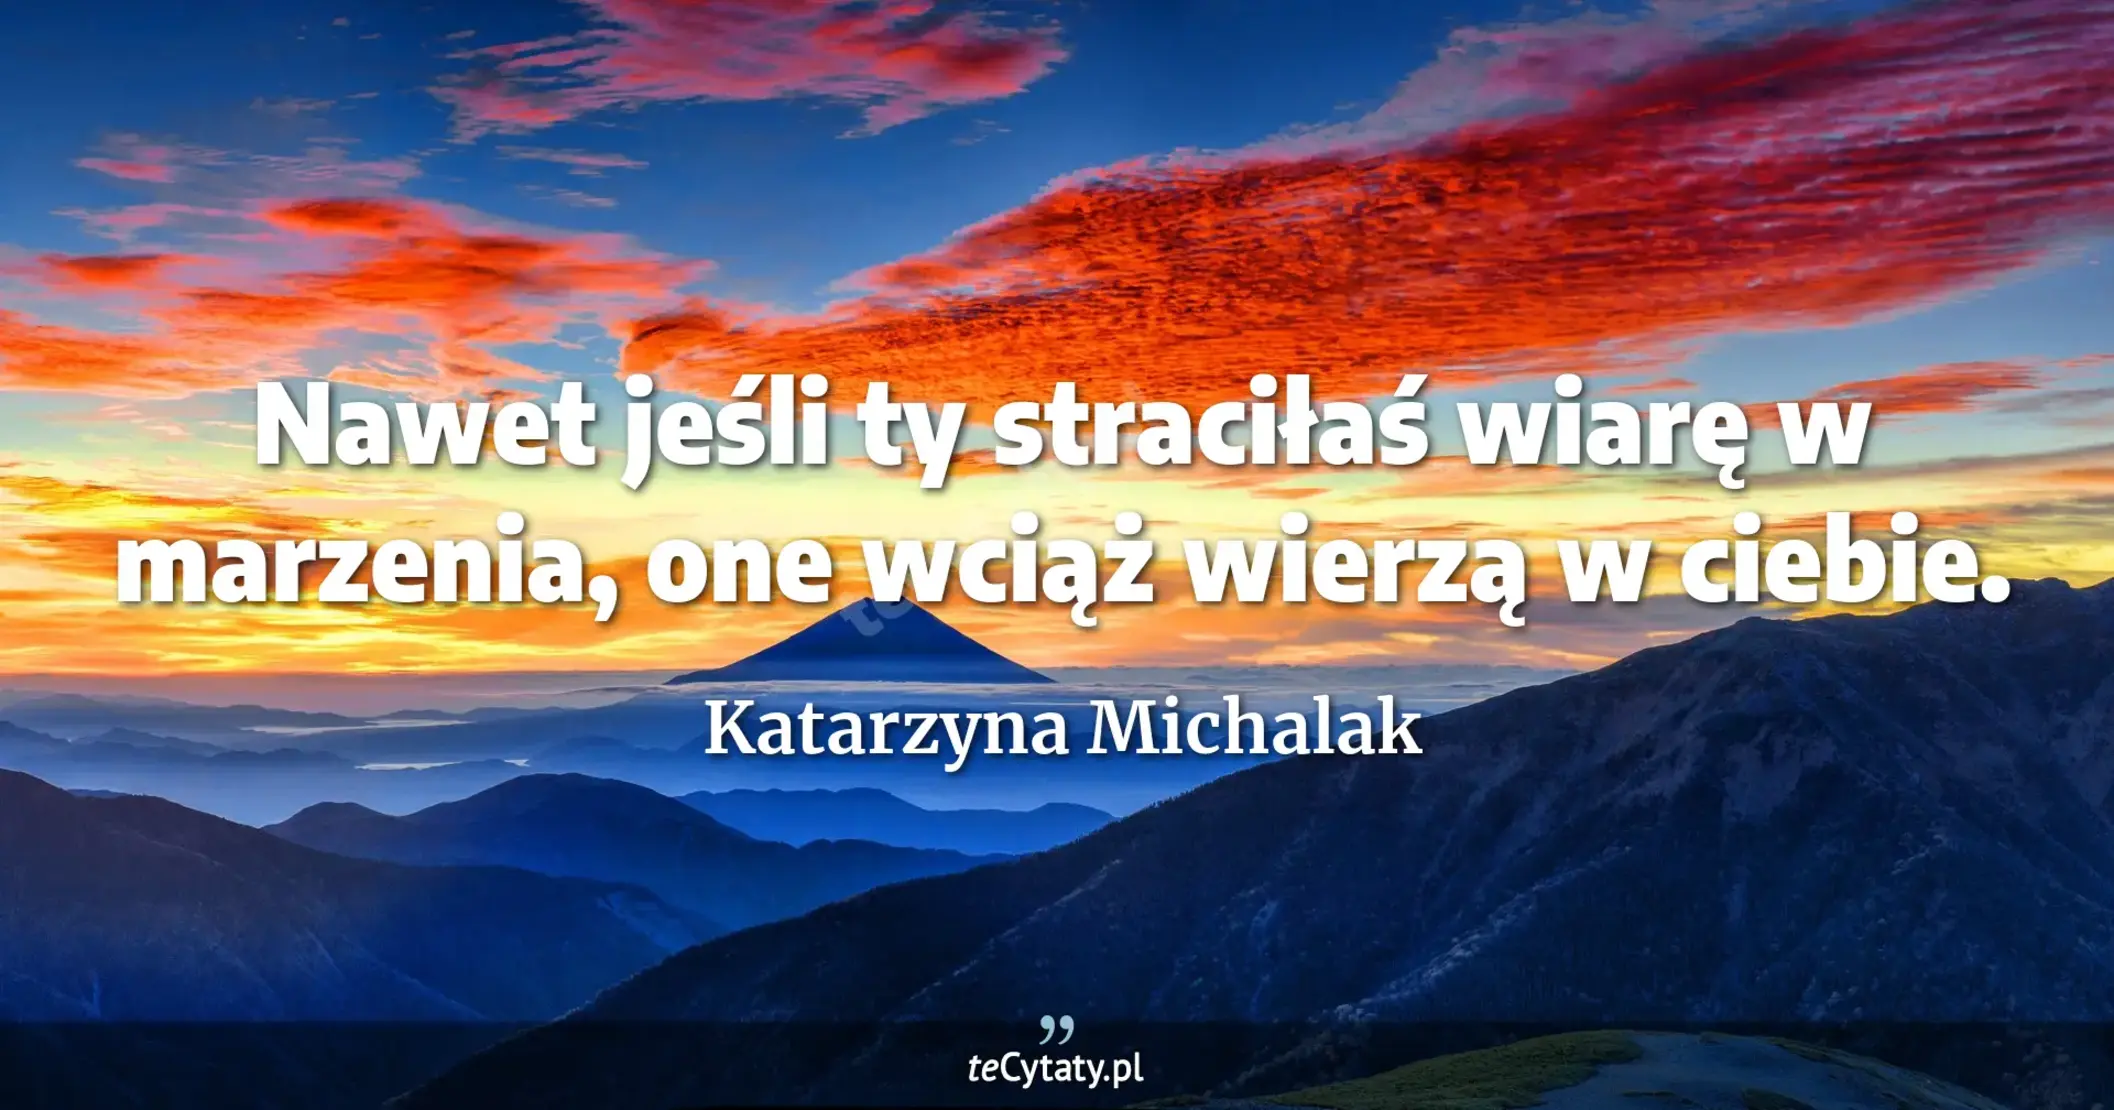 Nawet jeśli ty straciłaś wiarę w marzenia, one wciąż wierzą w ciebie. - Katarzyna Michalak